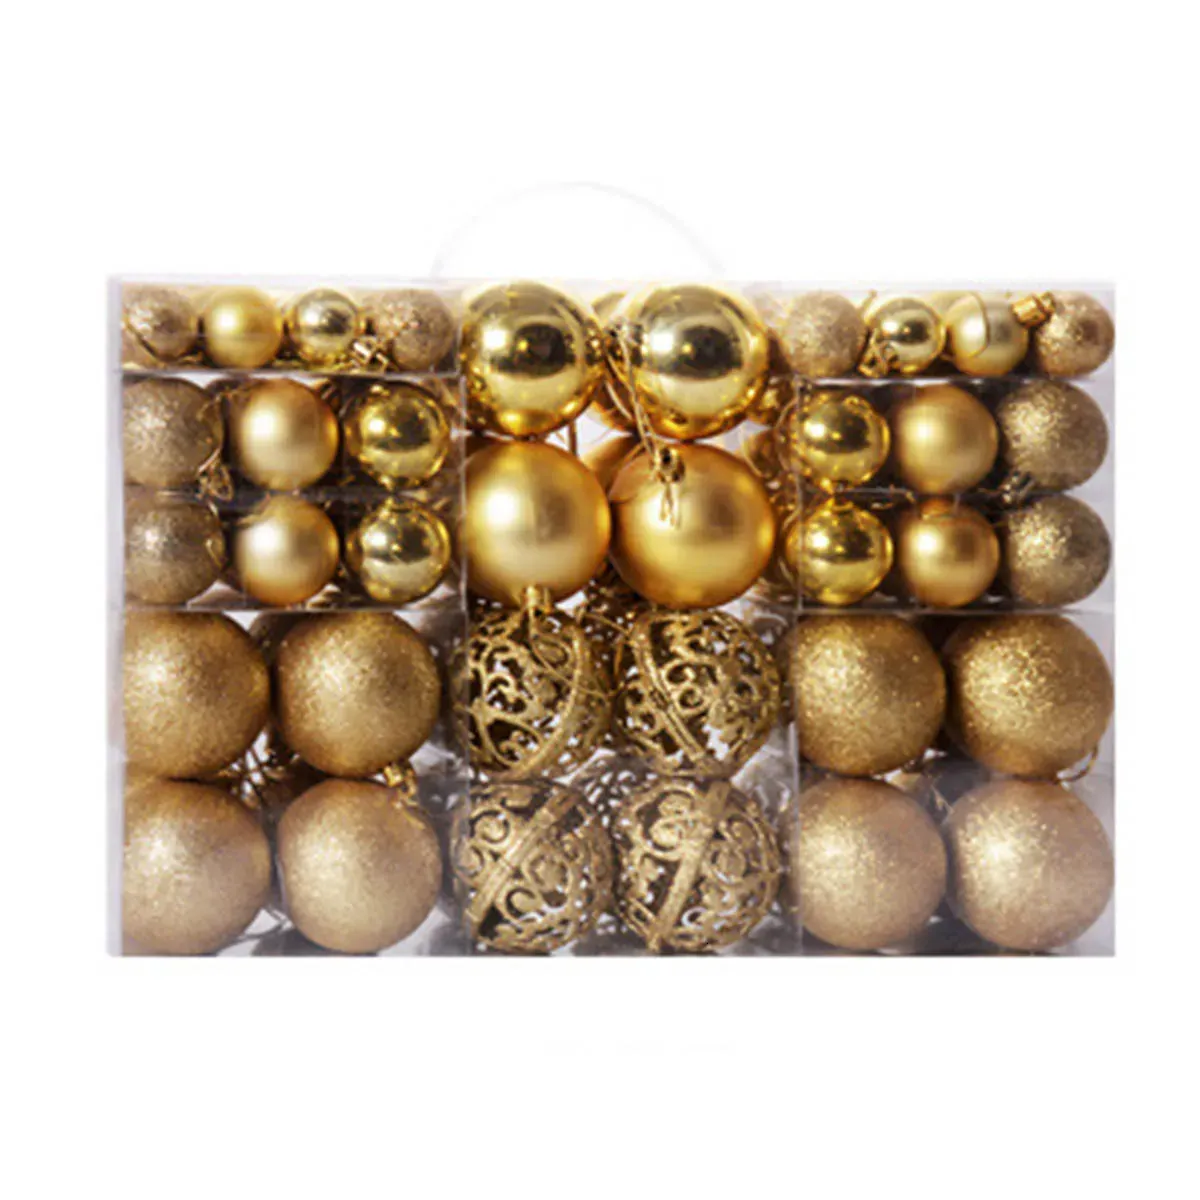 その他のイベントパーティーのサプライズ100pcsクリスマスボール粉砕プルーフクリスマスツリークリスマス装飾ボール装飾可能な実用的な高品質231027